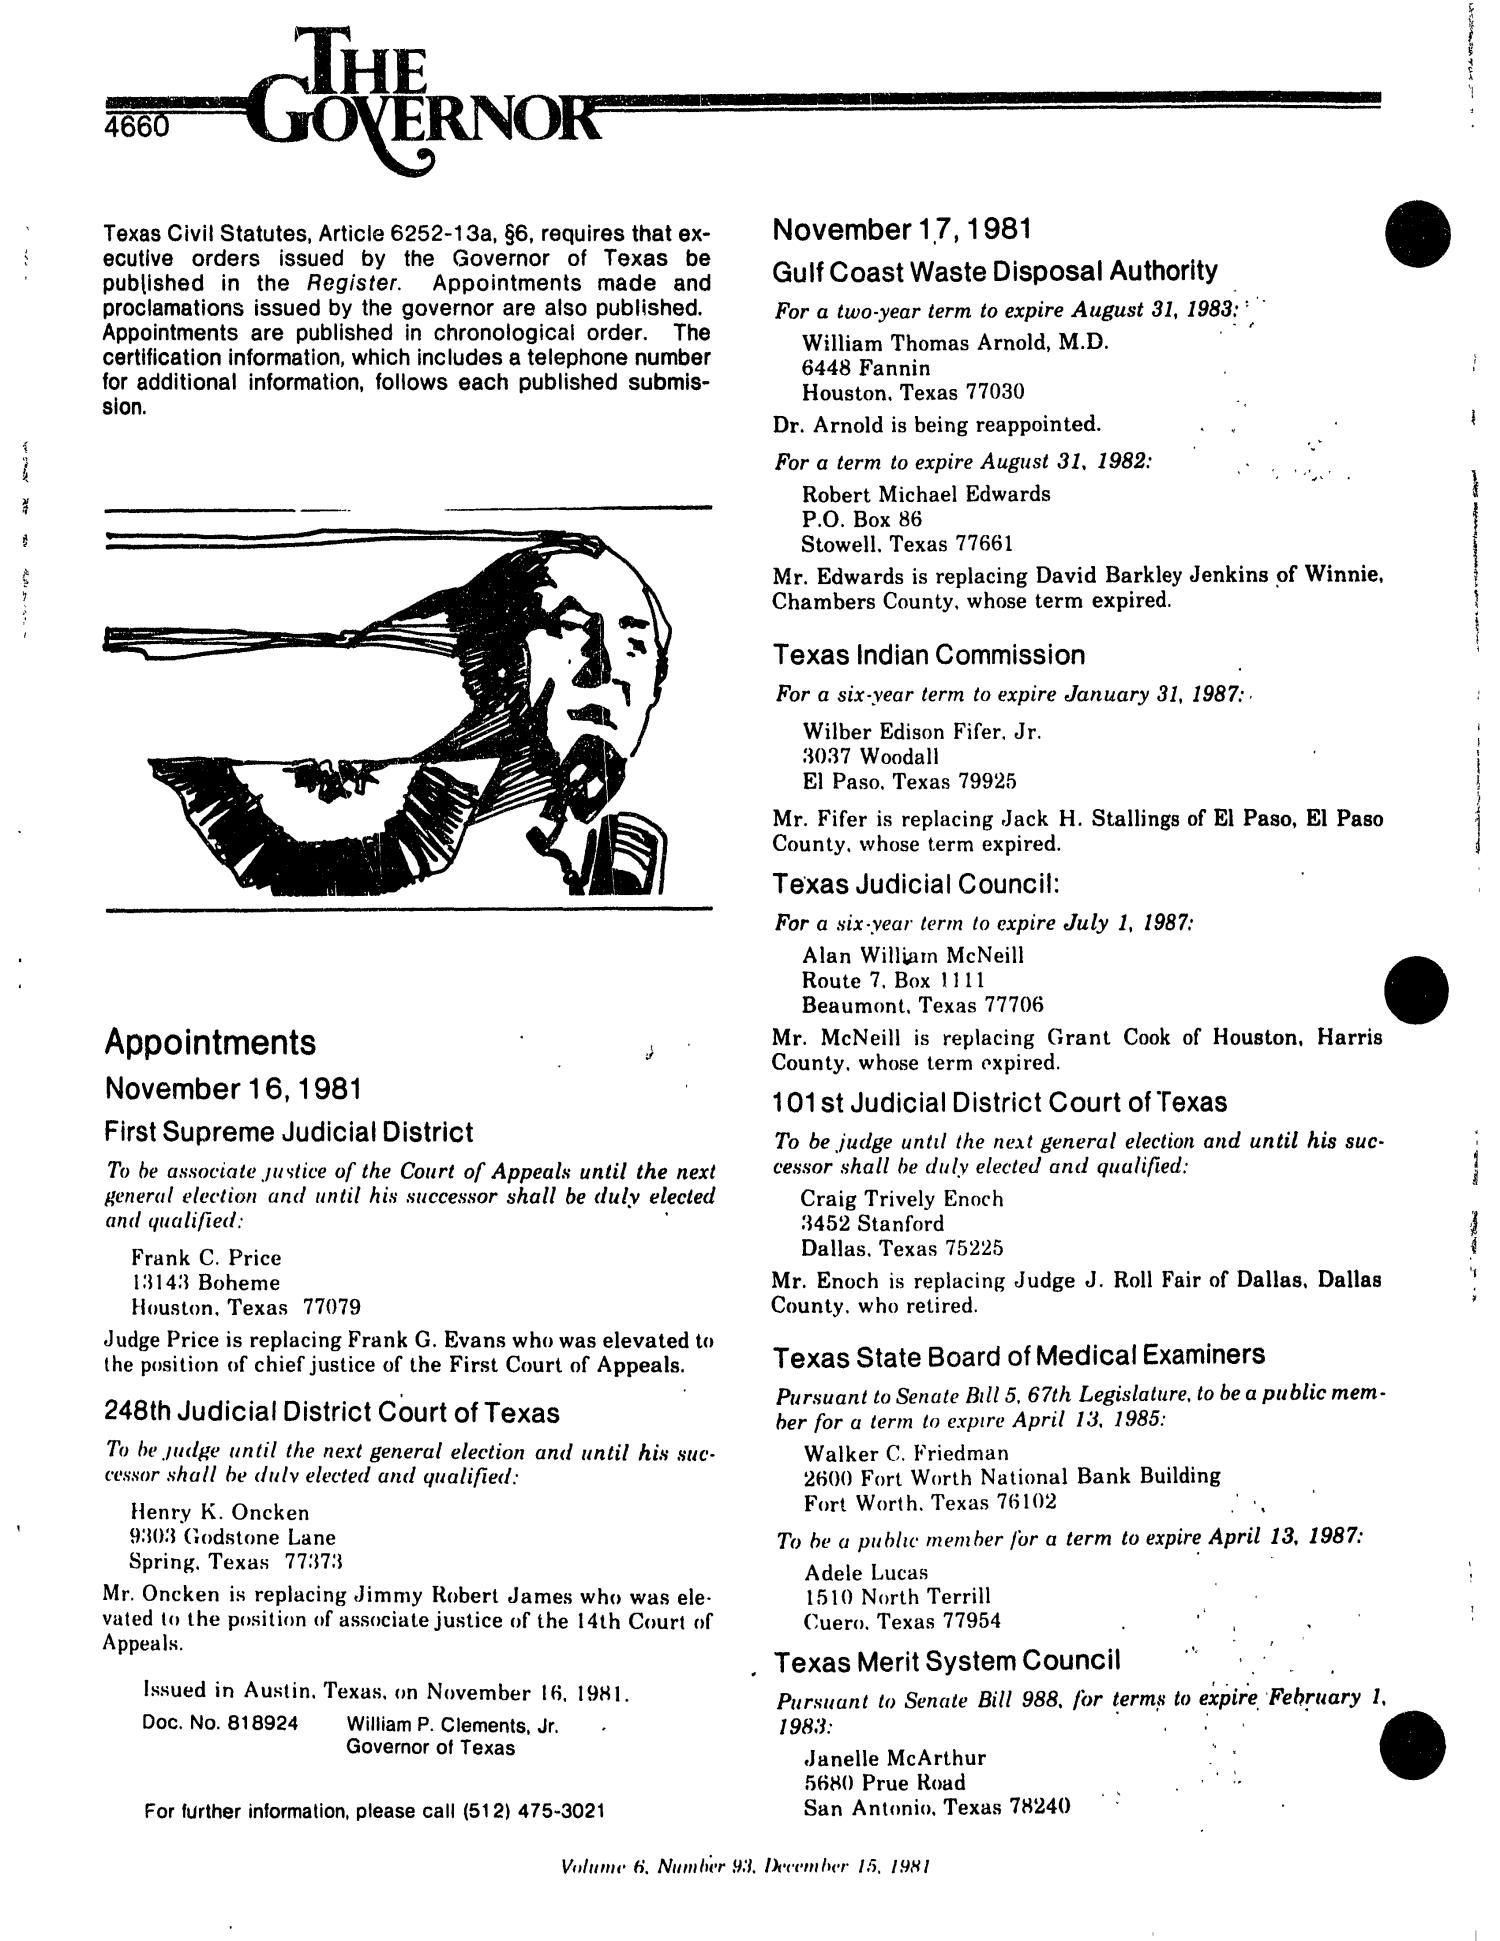 Texas Register, Volume 6, Number 93, Pages 4657-4696, December 15, 1981
                                                
                                                    4660
                                                